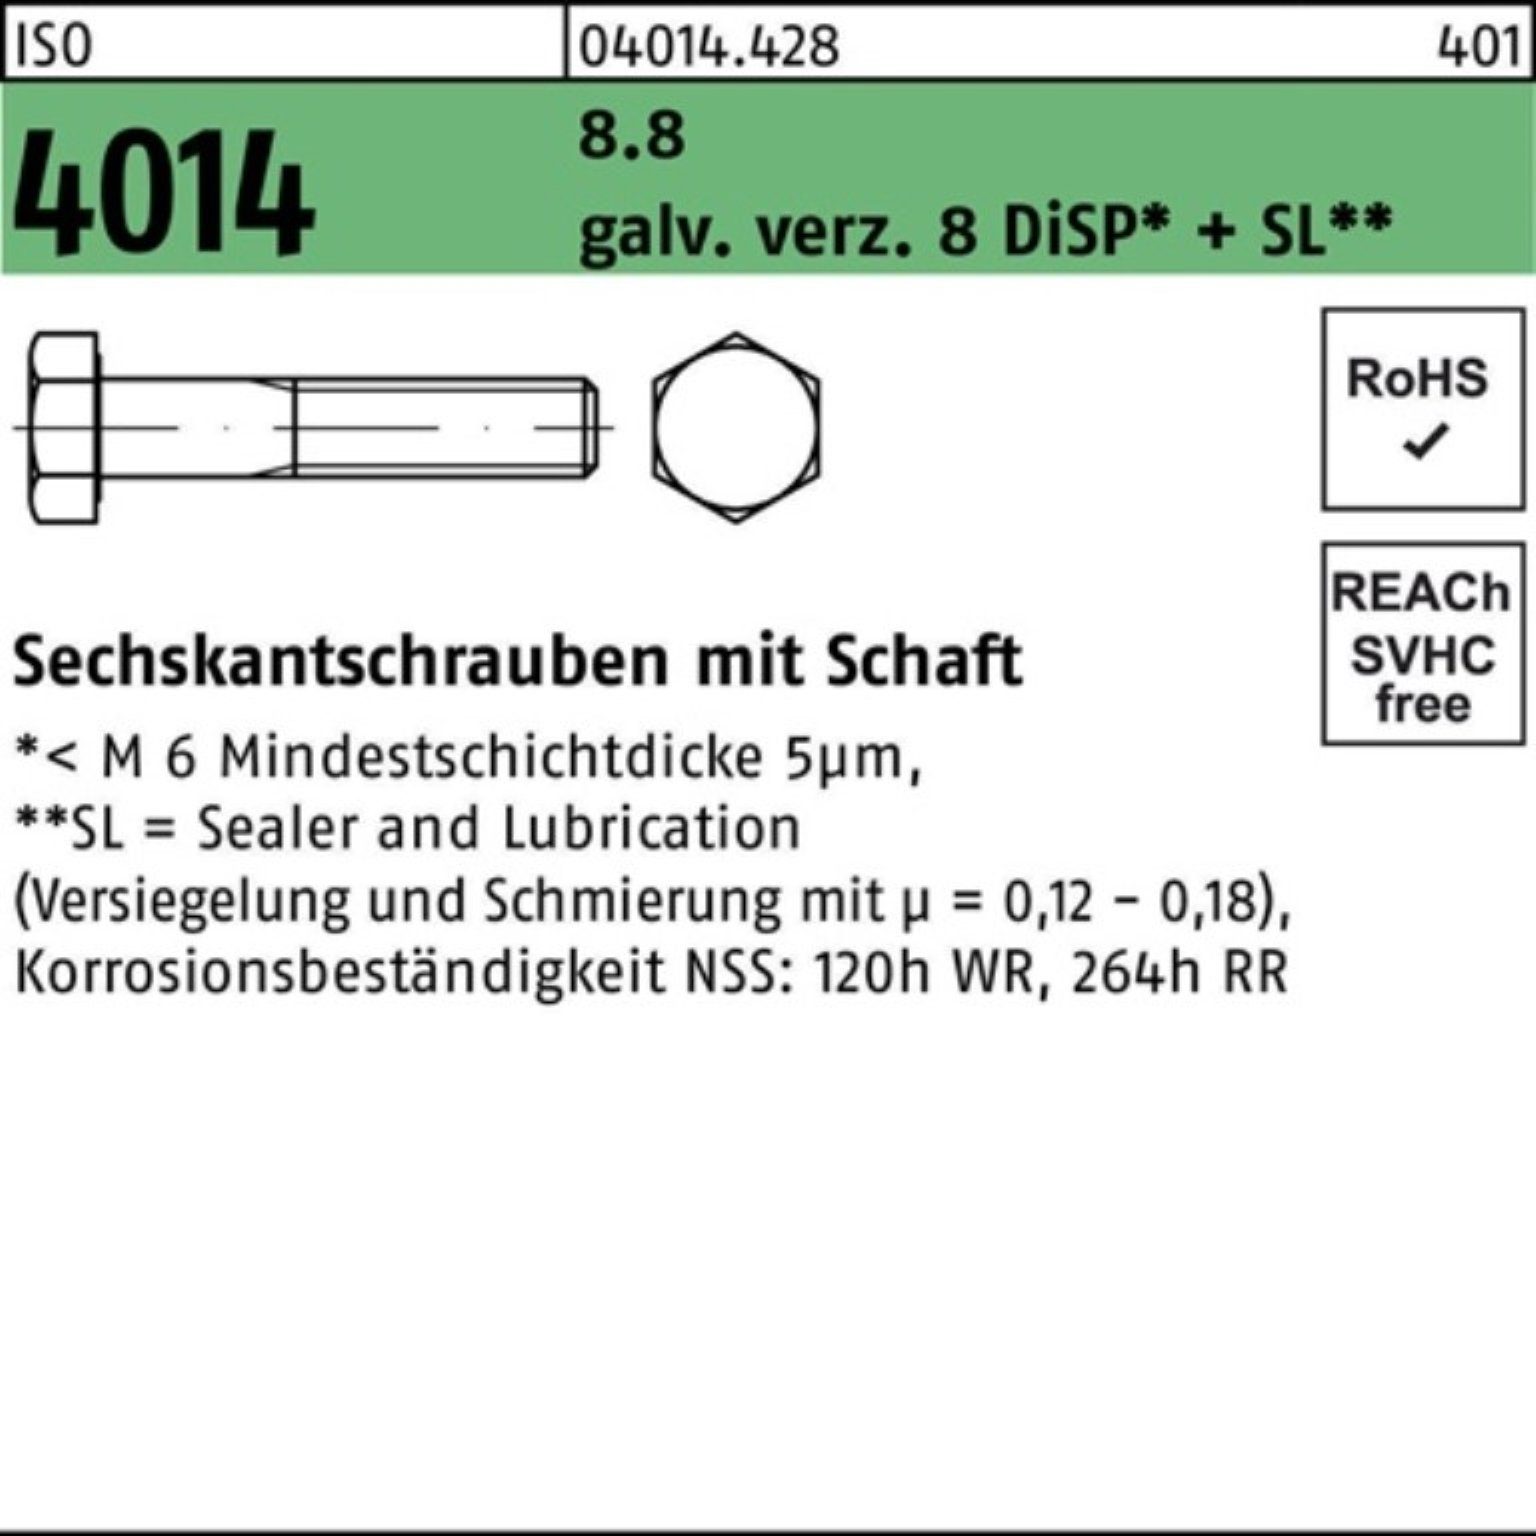 Bufab Sechskantschraube 100er Pack Sechskantschraube galv.verz. 8 Schaft ISO 8.8 M20x180 4014